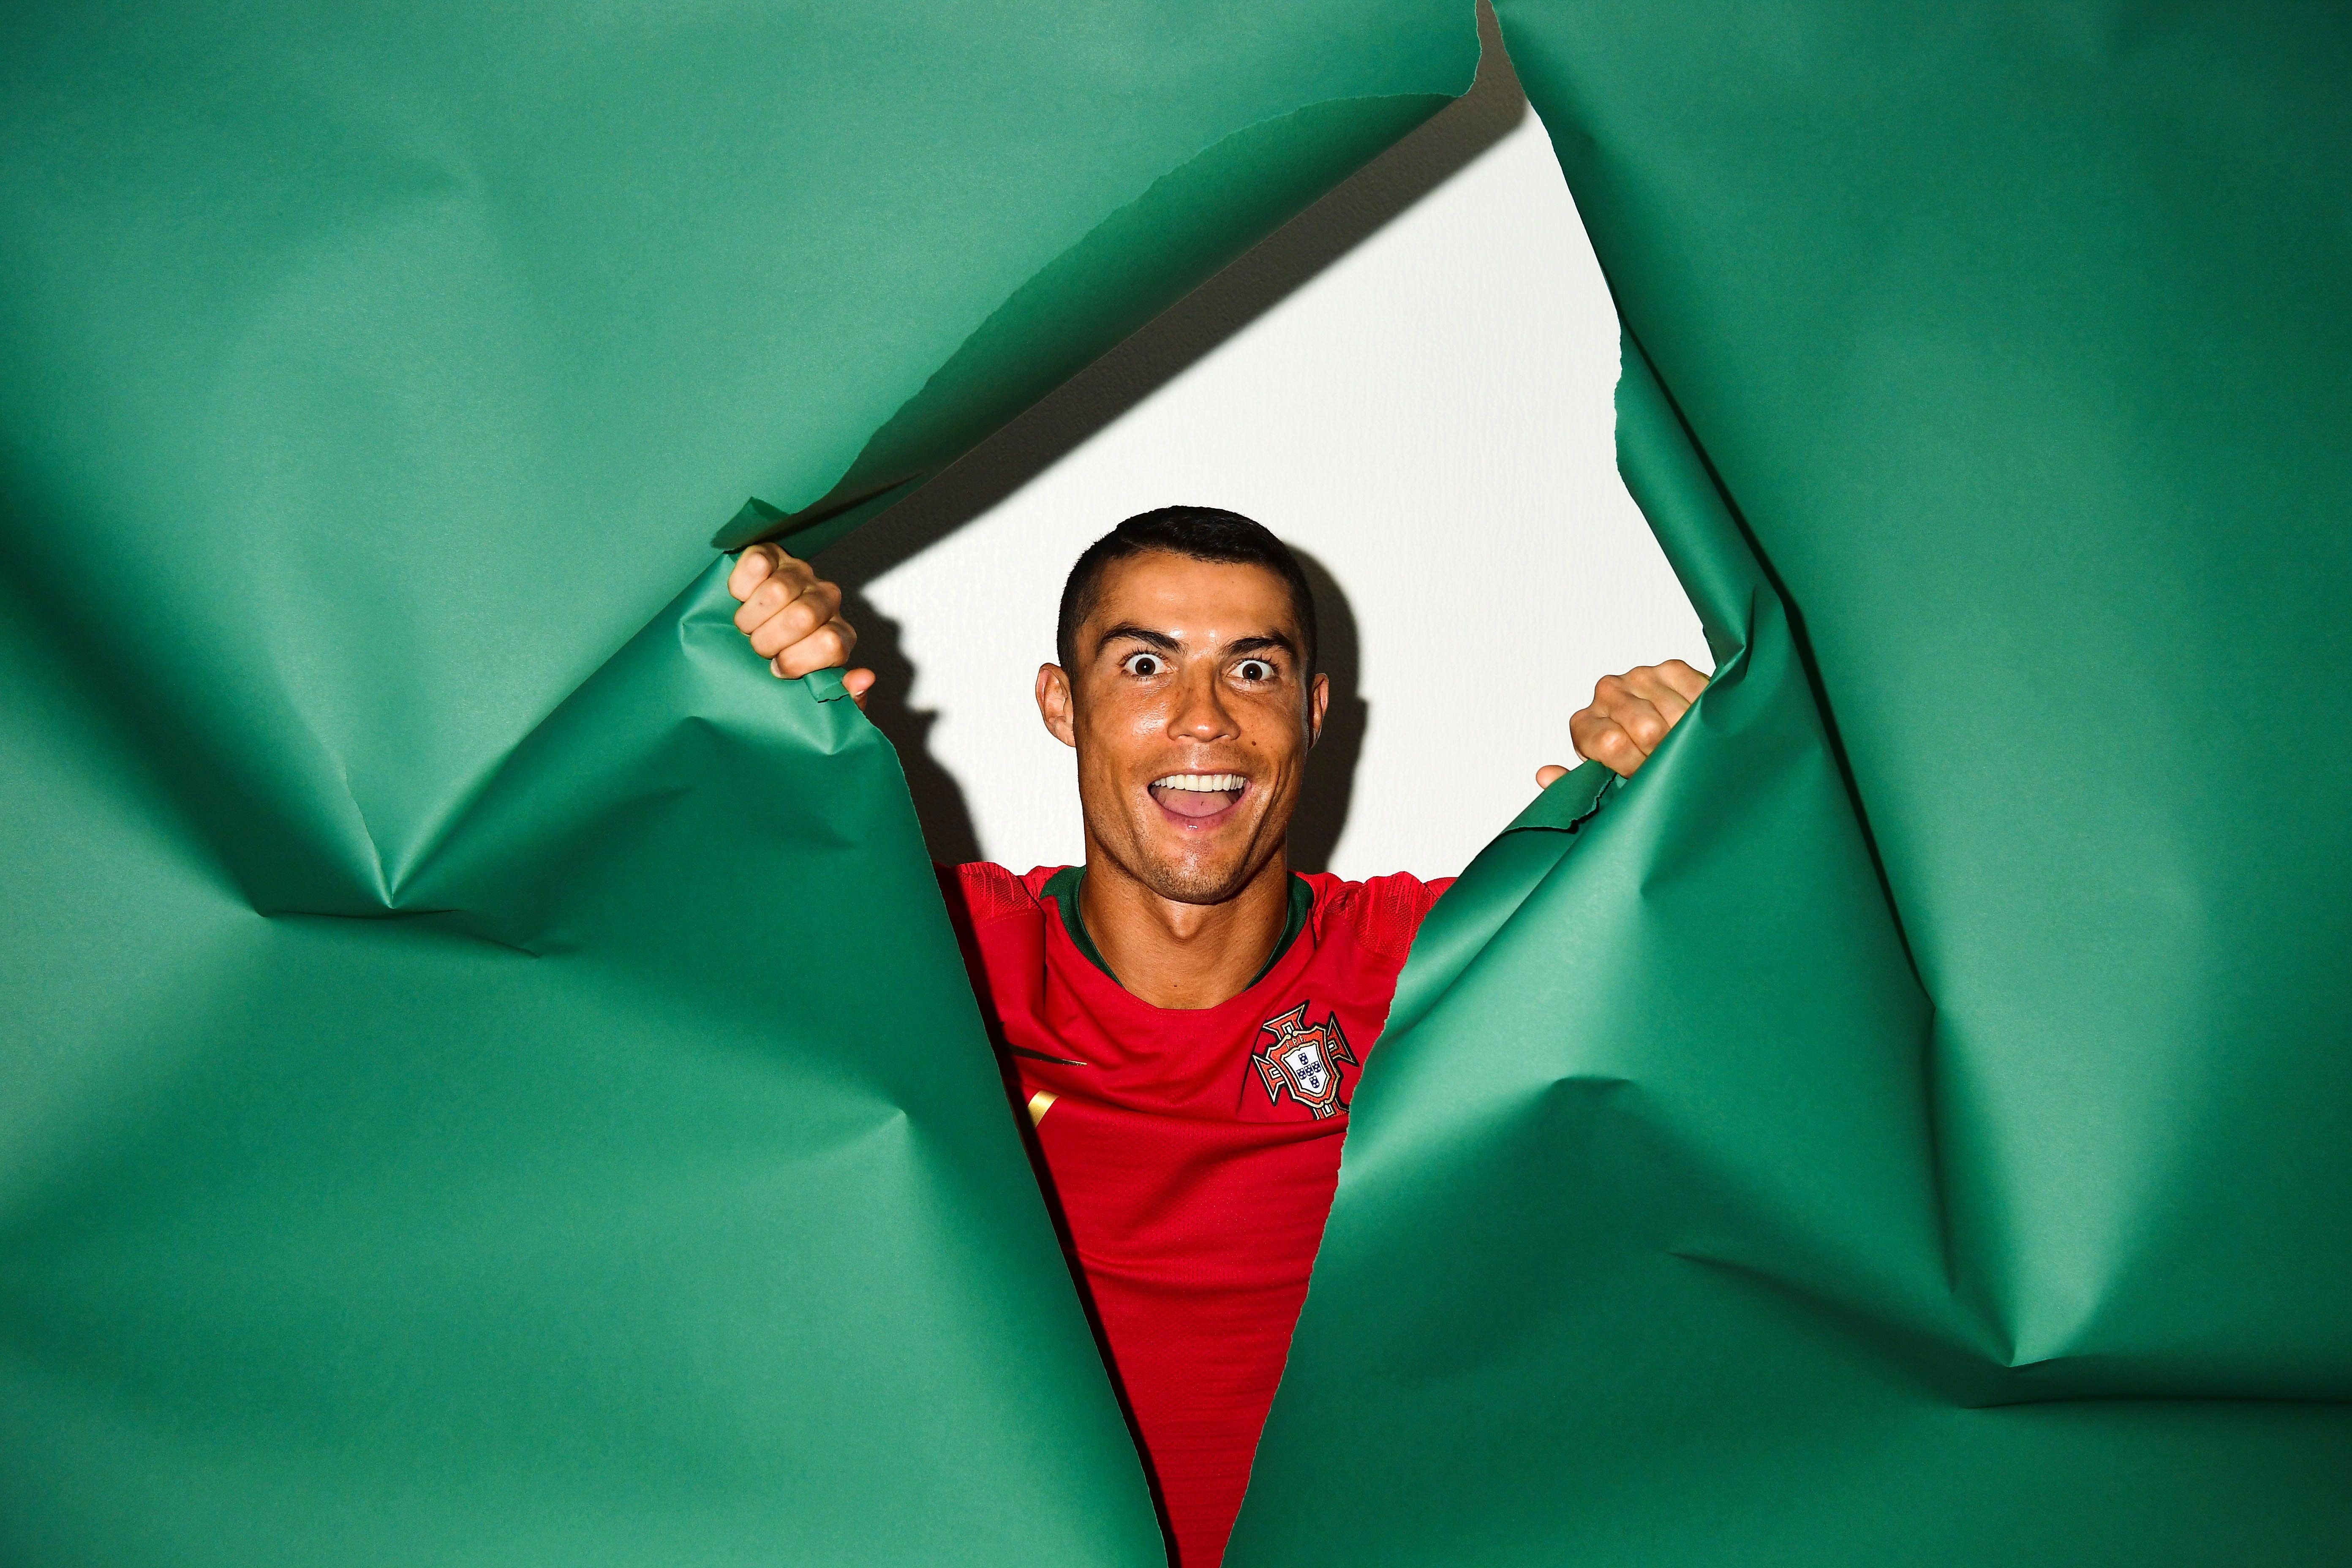 5568x3712 Cristiano Ronaldo Bồ Đào Nha Chân dung 2018, Thể thao HD, Hình nền 4k, Hình hình họa, Bối cảnh, Hình hình họa và Hình ảnh